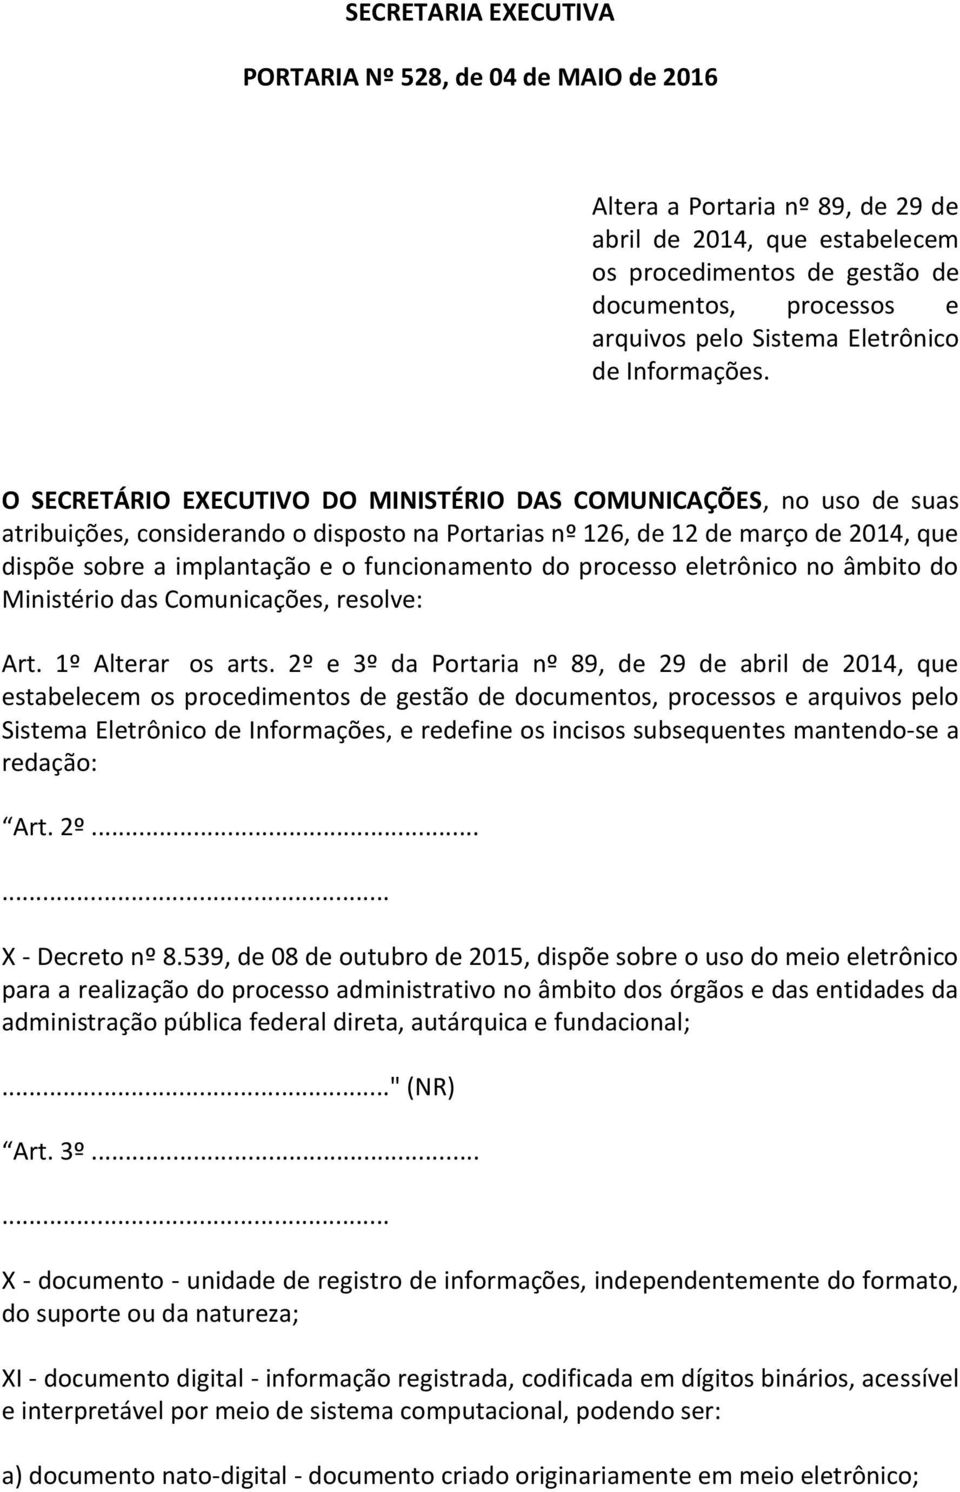 O SECRETÁRIO EXECUTIVO DO MINISTÉRIO DAS COMUNICAÇÕES, no uso de suas atribuições, considerando o disposto na Portarias nº 126, de 12 de março de 2014, que dispõe sobre a implantação e o